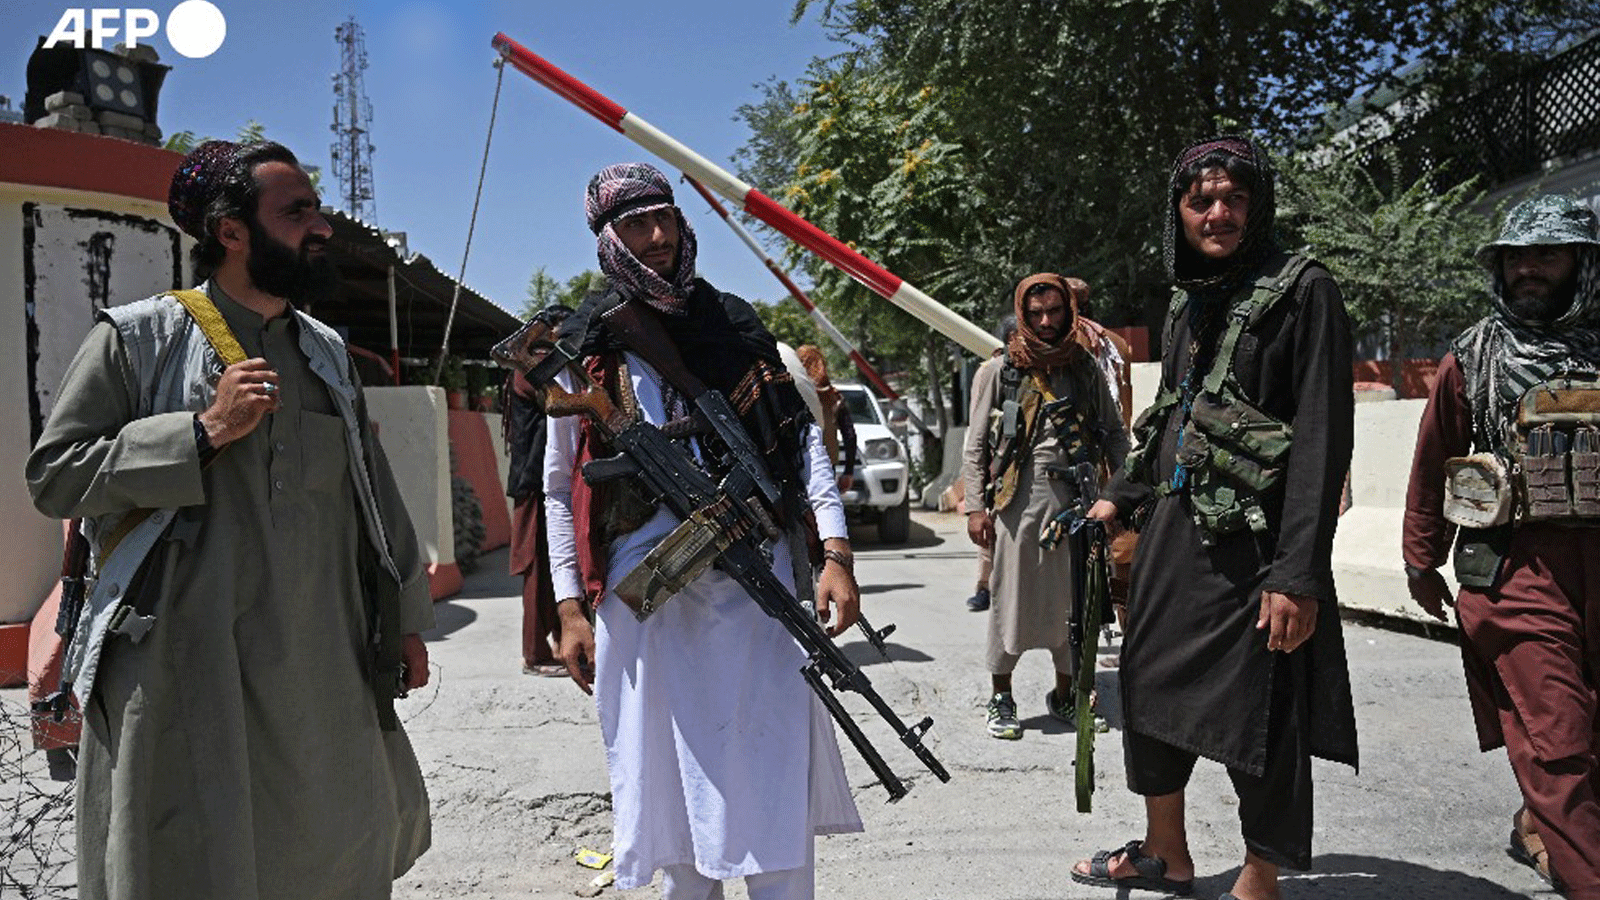 مقاتلو طالبان يقومون بدوريات في كابول يوم الاثنين 23 آب/ أغسطس 2021 بعد نهاية سريعة ومفاجئة للحرب في أفغانستان التي استمرت 20 عامًا، فيما يحتشد الآلاف من الناس في مطار المدينة محاولين الفرار من حكم الحركة الإسلامية المتشددة.